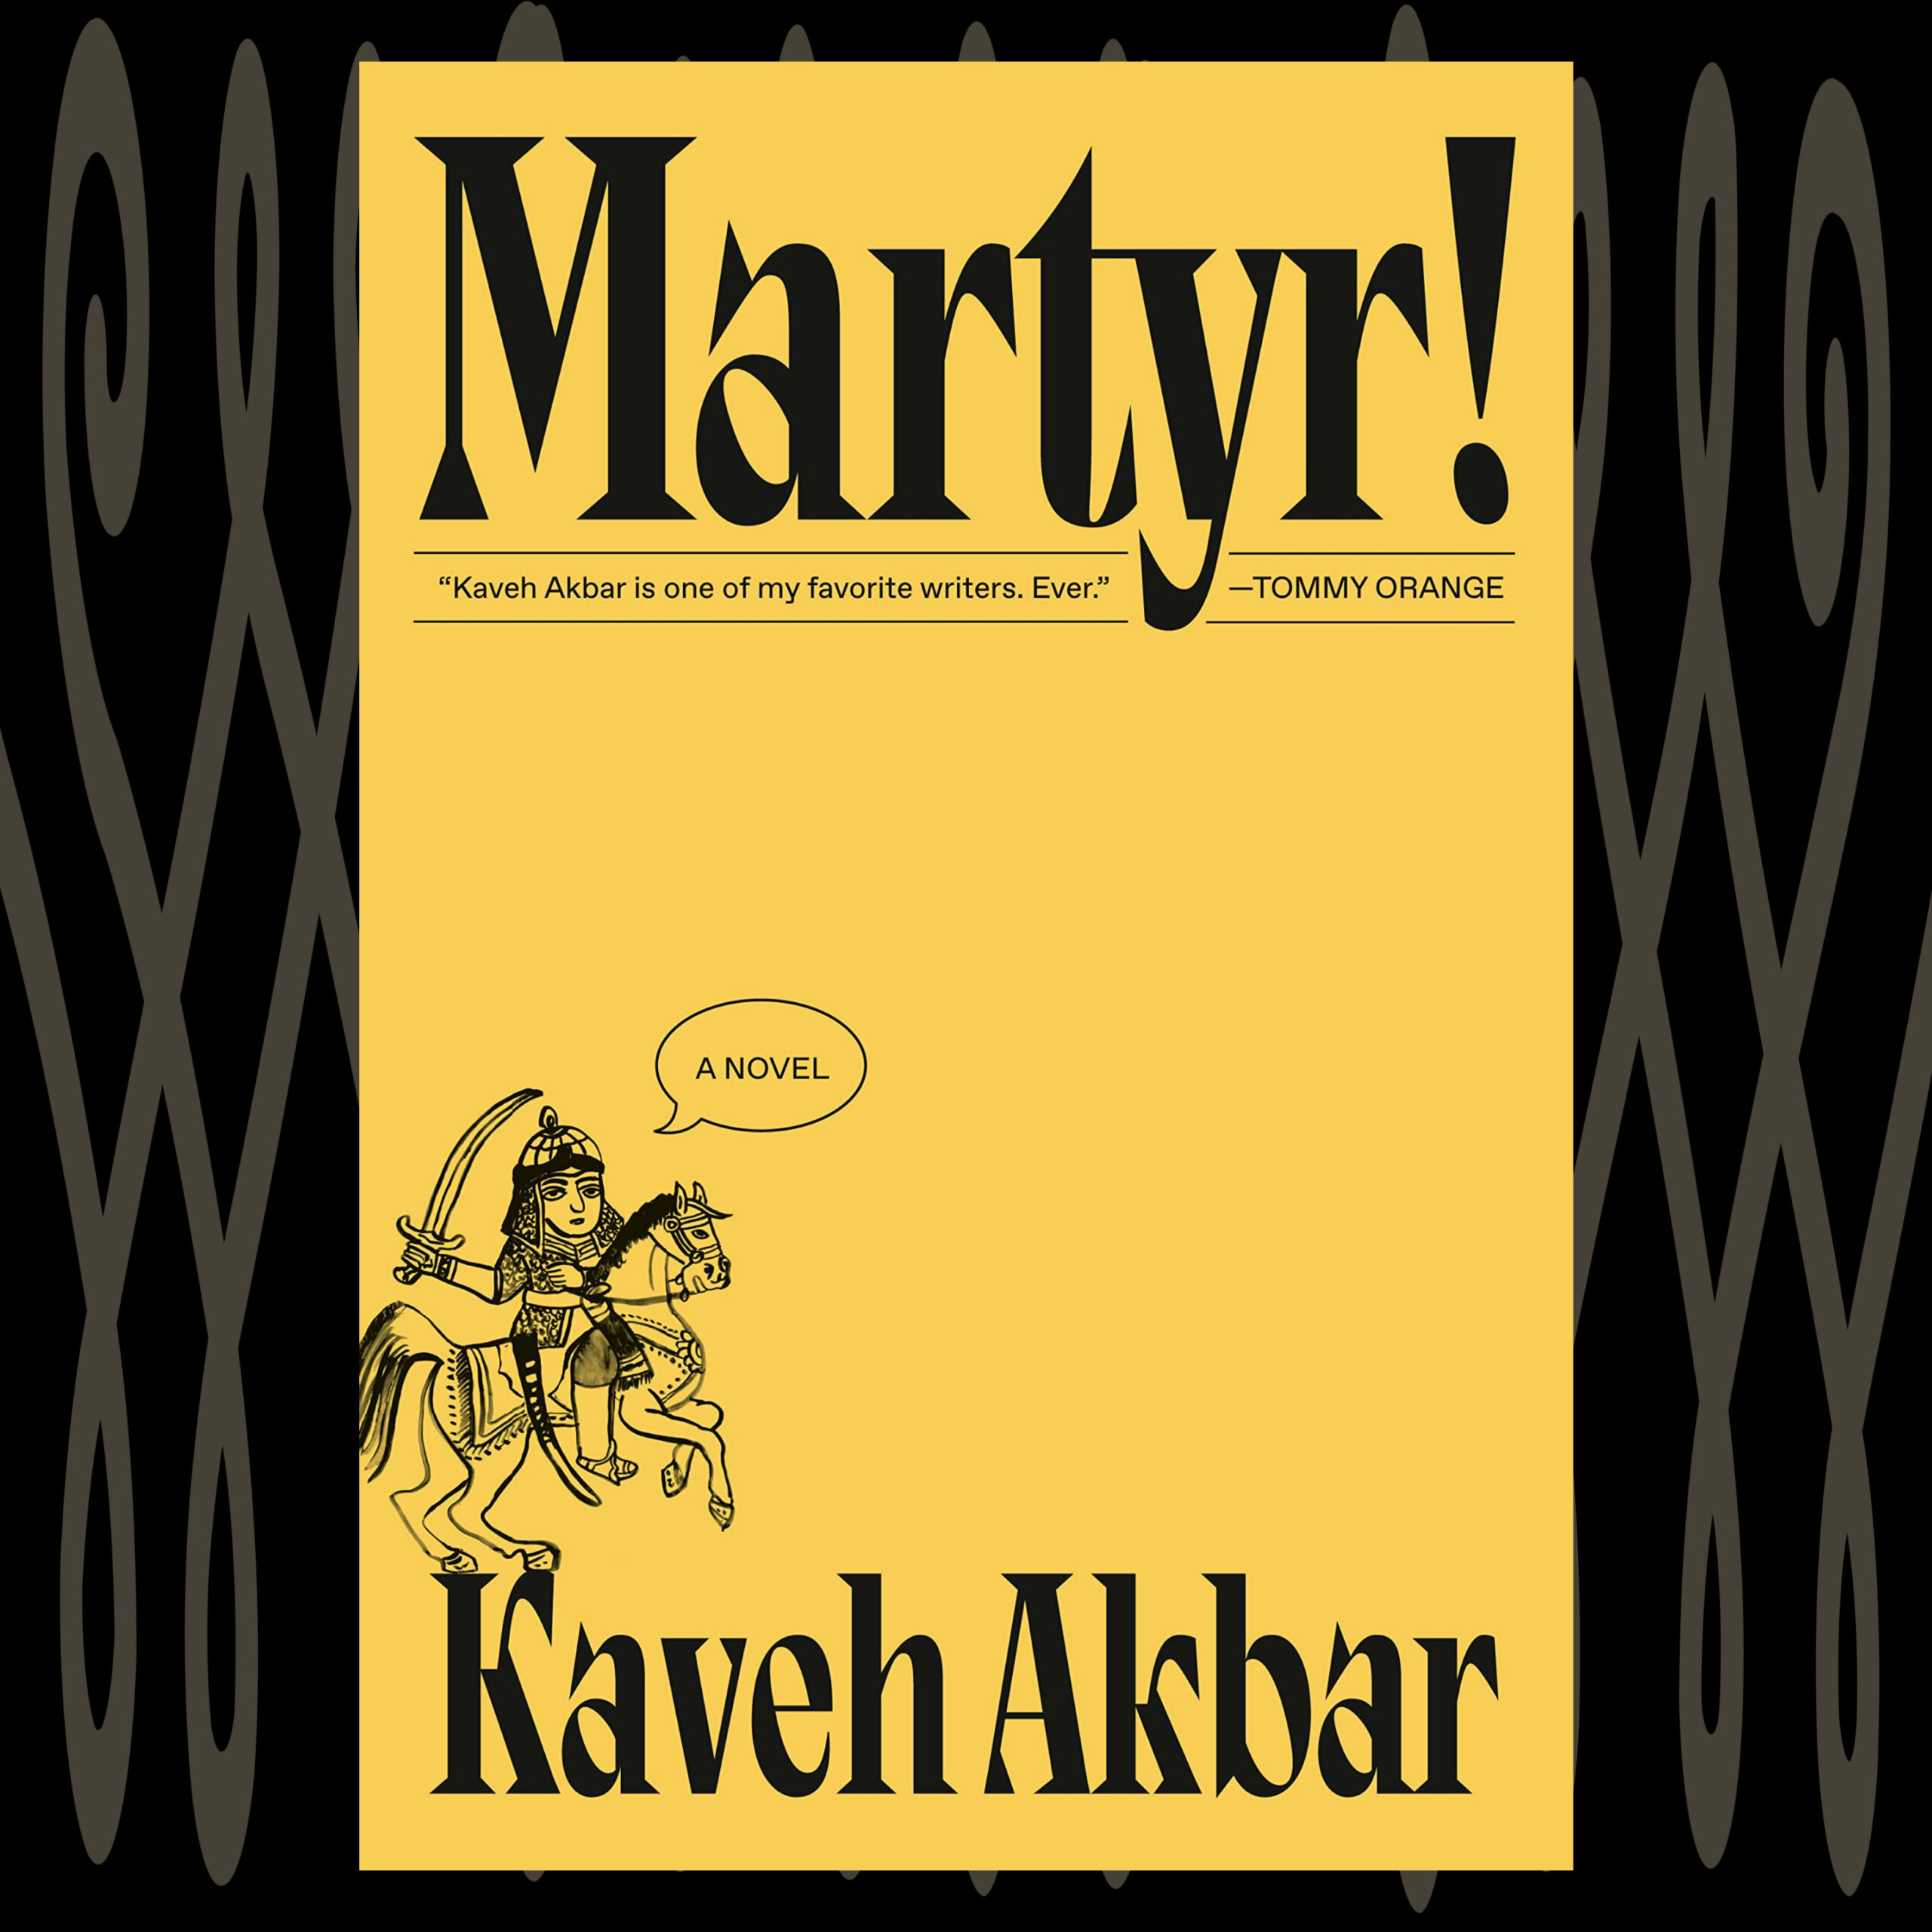 The Book Show | Kaveh Akbar - Martyr!